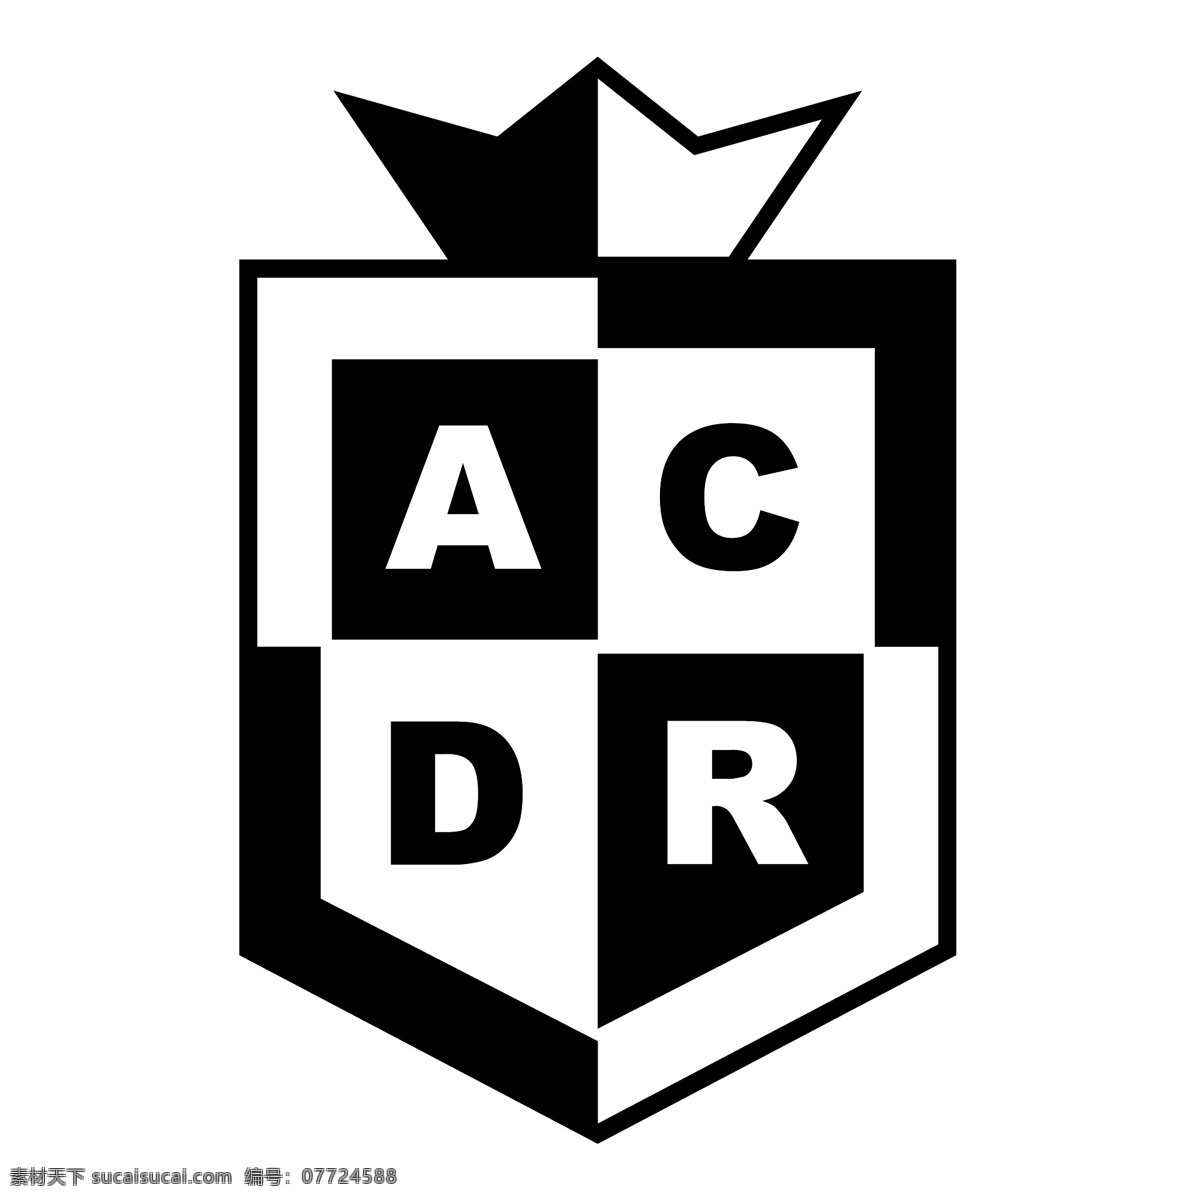 马 竞 俱乐部 y 拉科 鲁尼亚 位于 拉普拉塔 自由 竞技 收复 失地 标志 psd源文件 logo设计